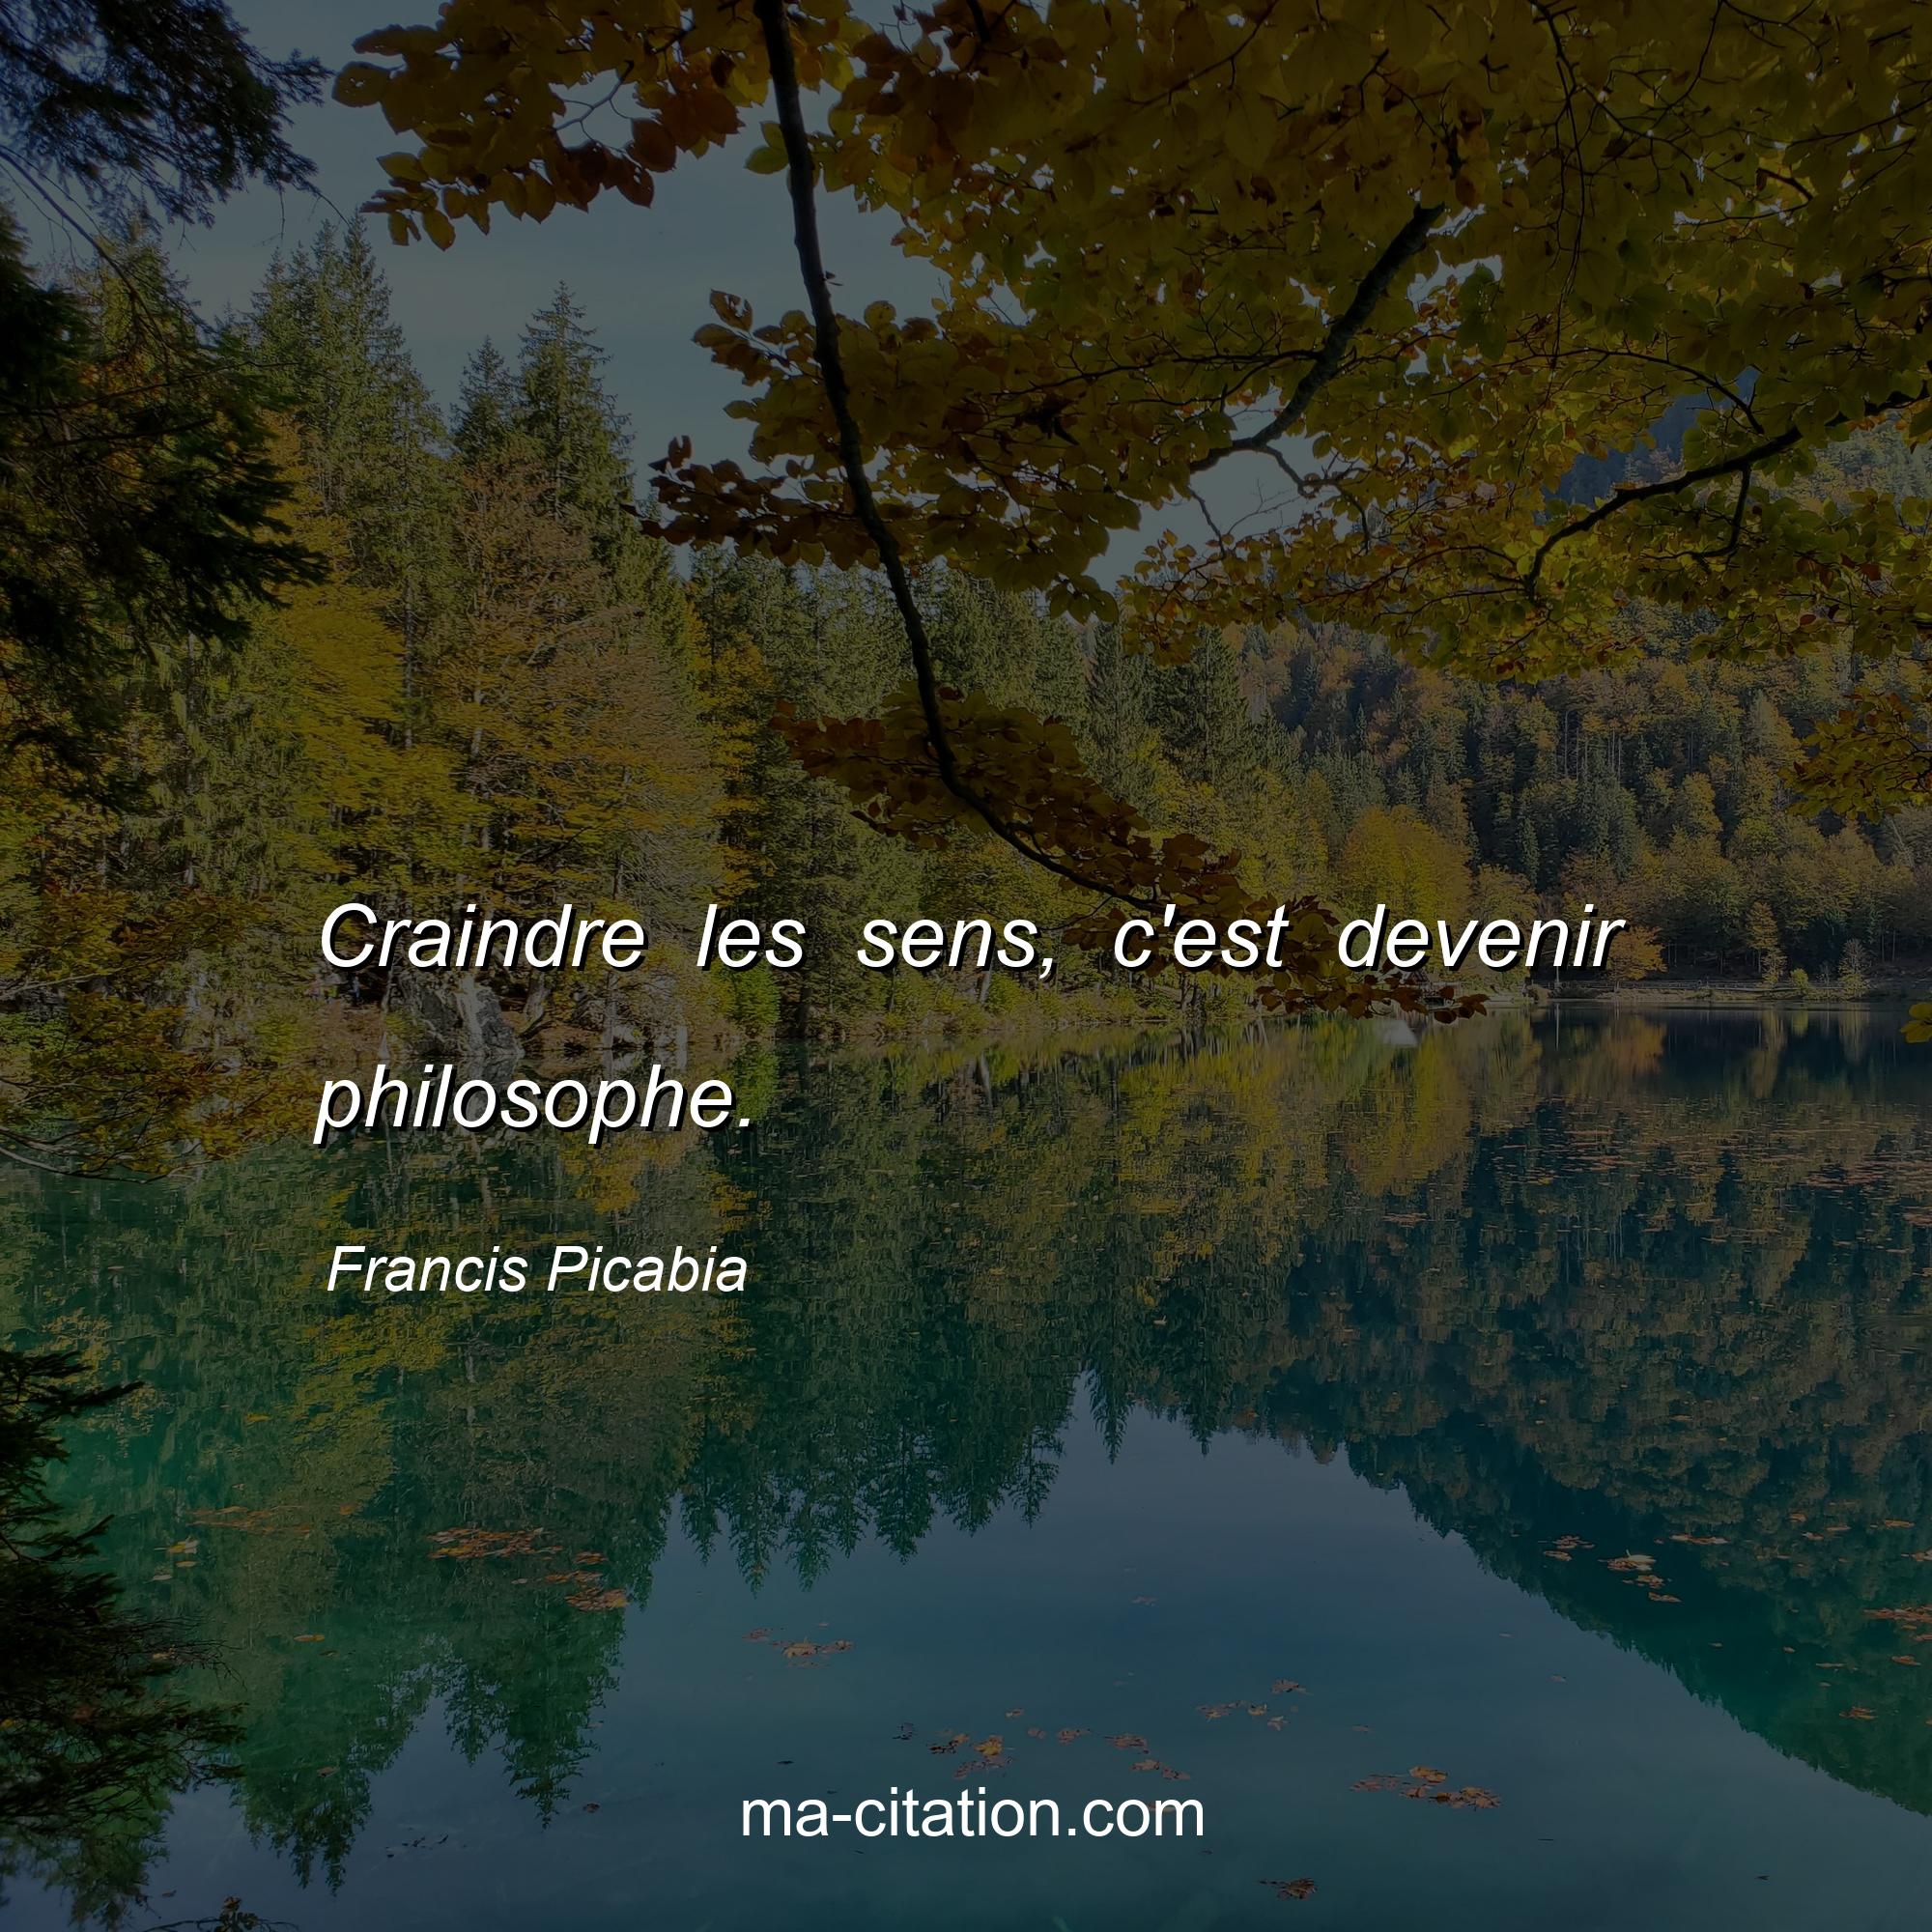 Francis Picabia : Craindre les sens, c'est devenir philosophe.